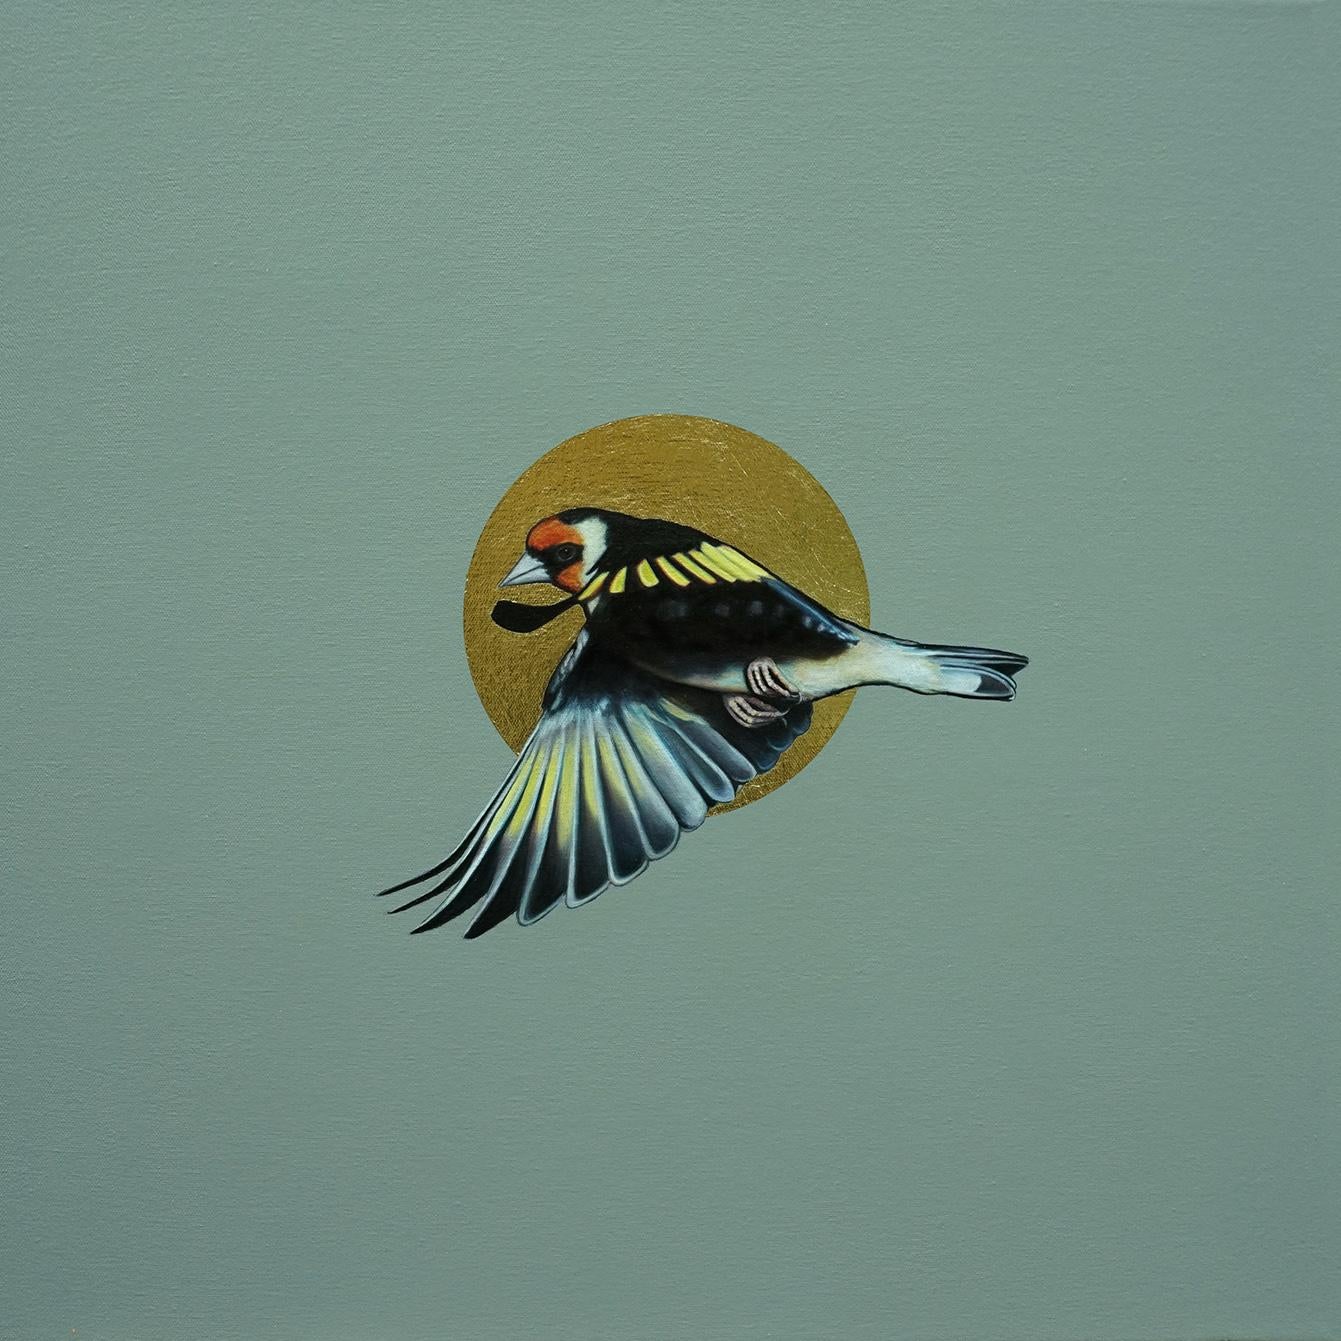 Helios II - Oiseau en vol avec soleil doré : huile sur toile - Painting de Mike Ellis